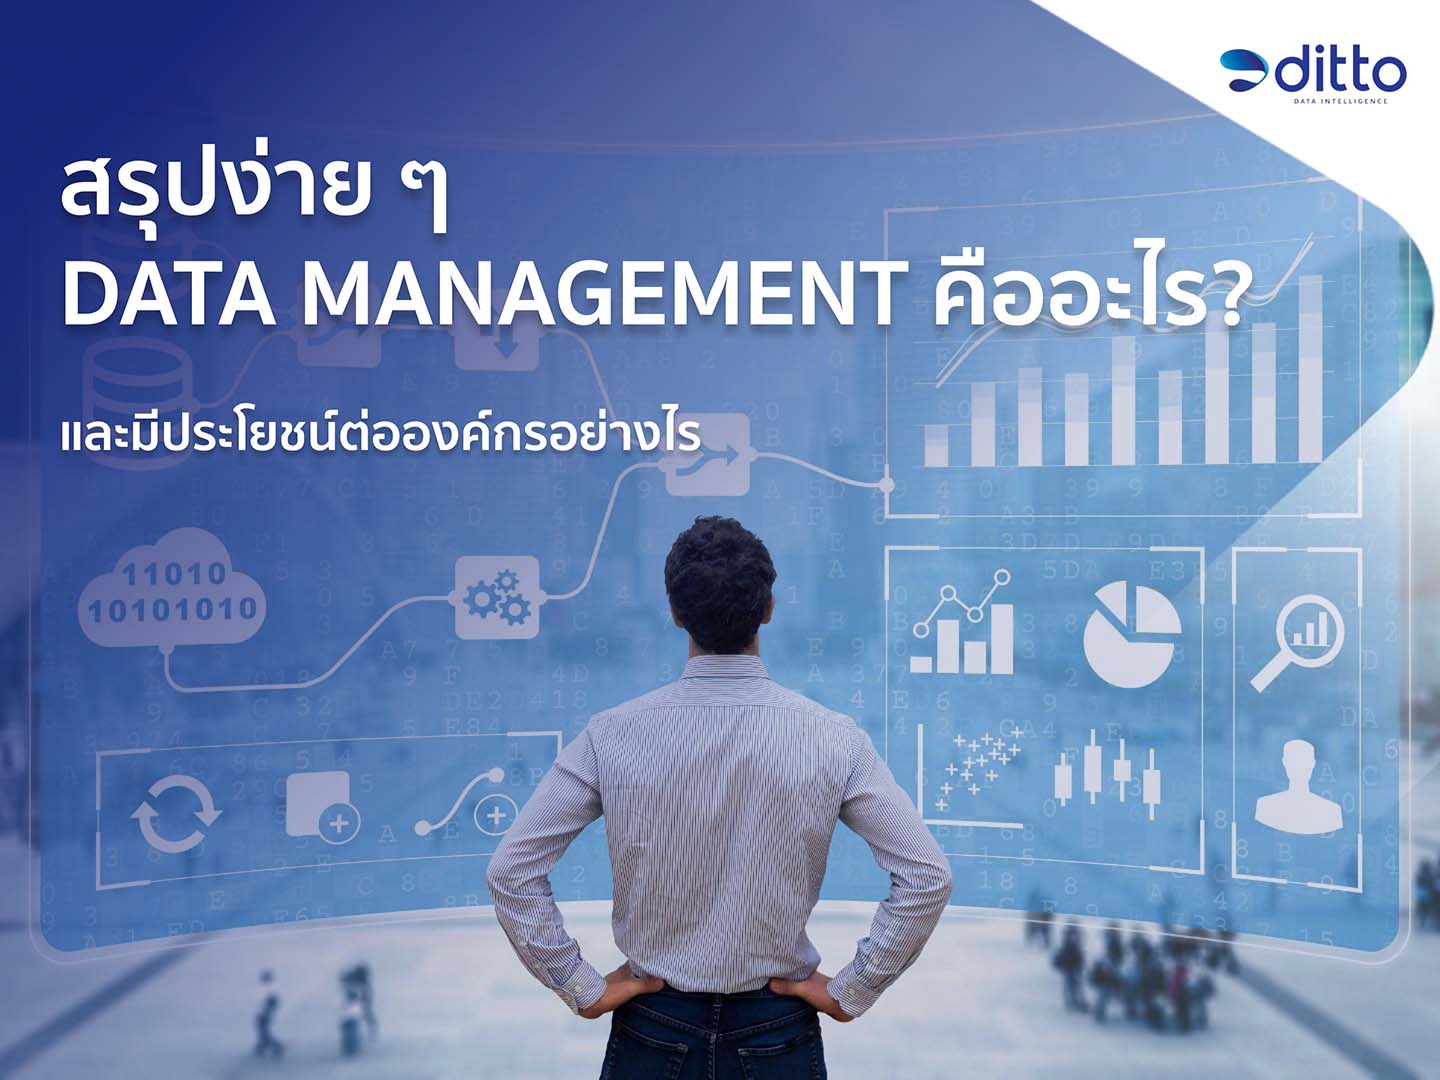 Data Management คือ